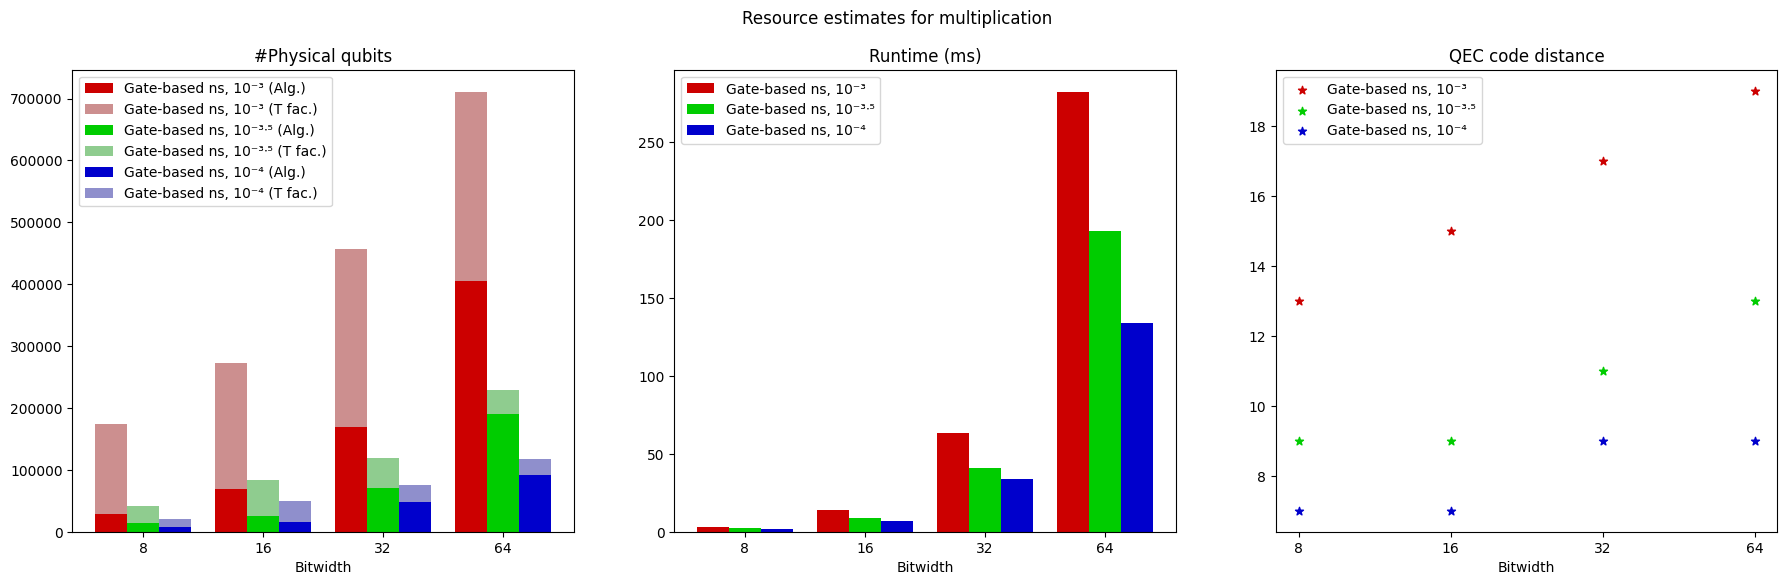 Trazado que muestra un gráfico de barras de la estimación de recursos físicos de cúbits físicos, tiempo de ejecución y distancia de código para tres configuraciones diferentes de parámetros de entrada.